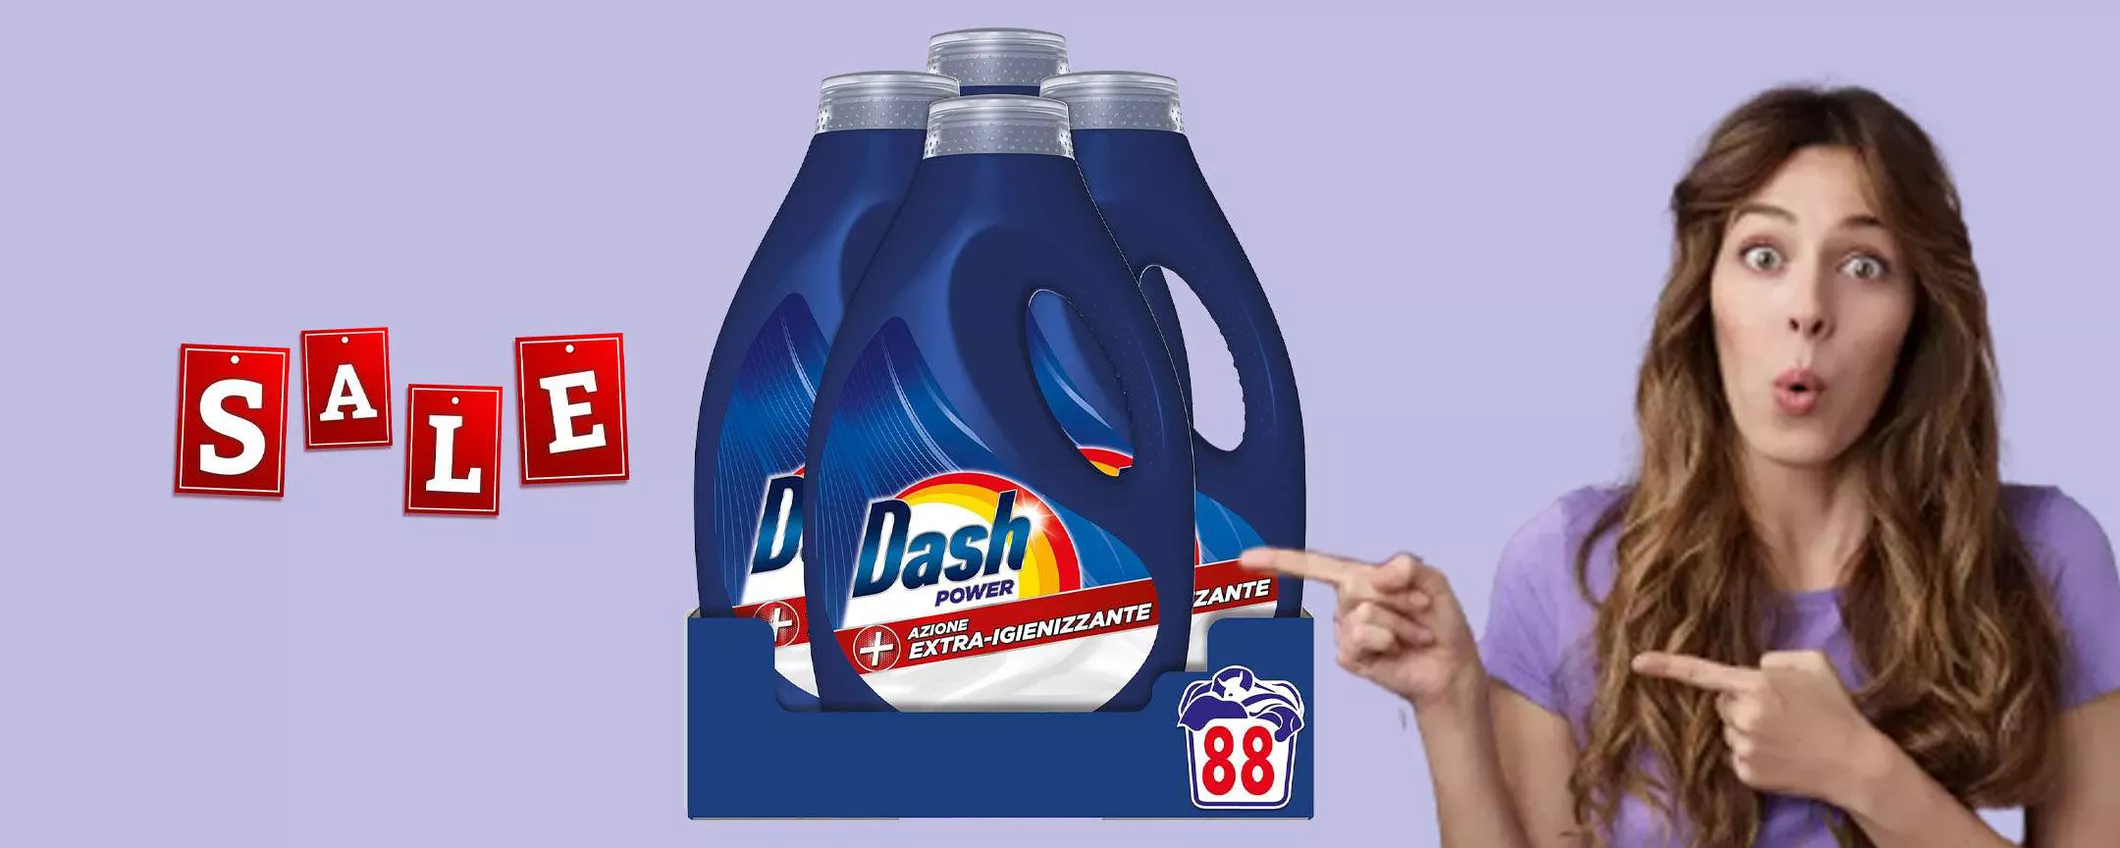 Dash Power Detersivo liquido lavatrice 88 lavaggi: sconto TOP del 35%